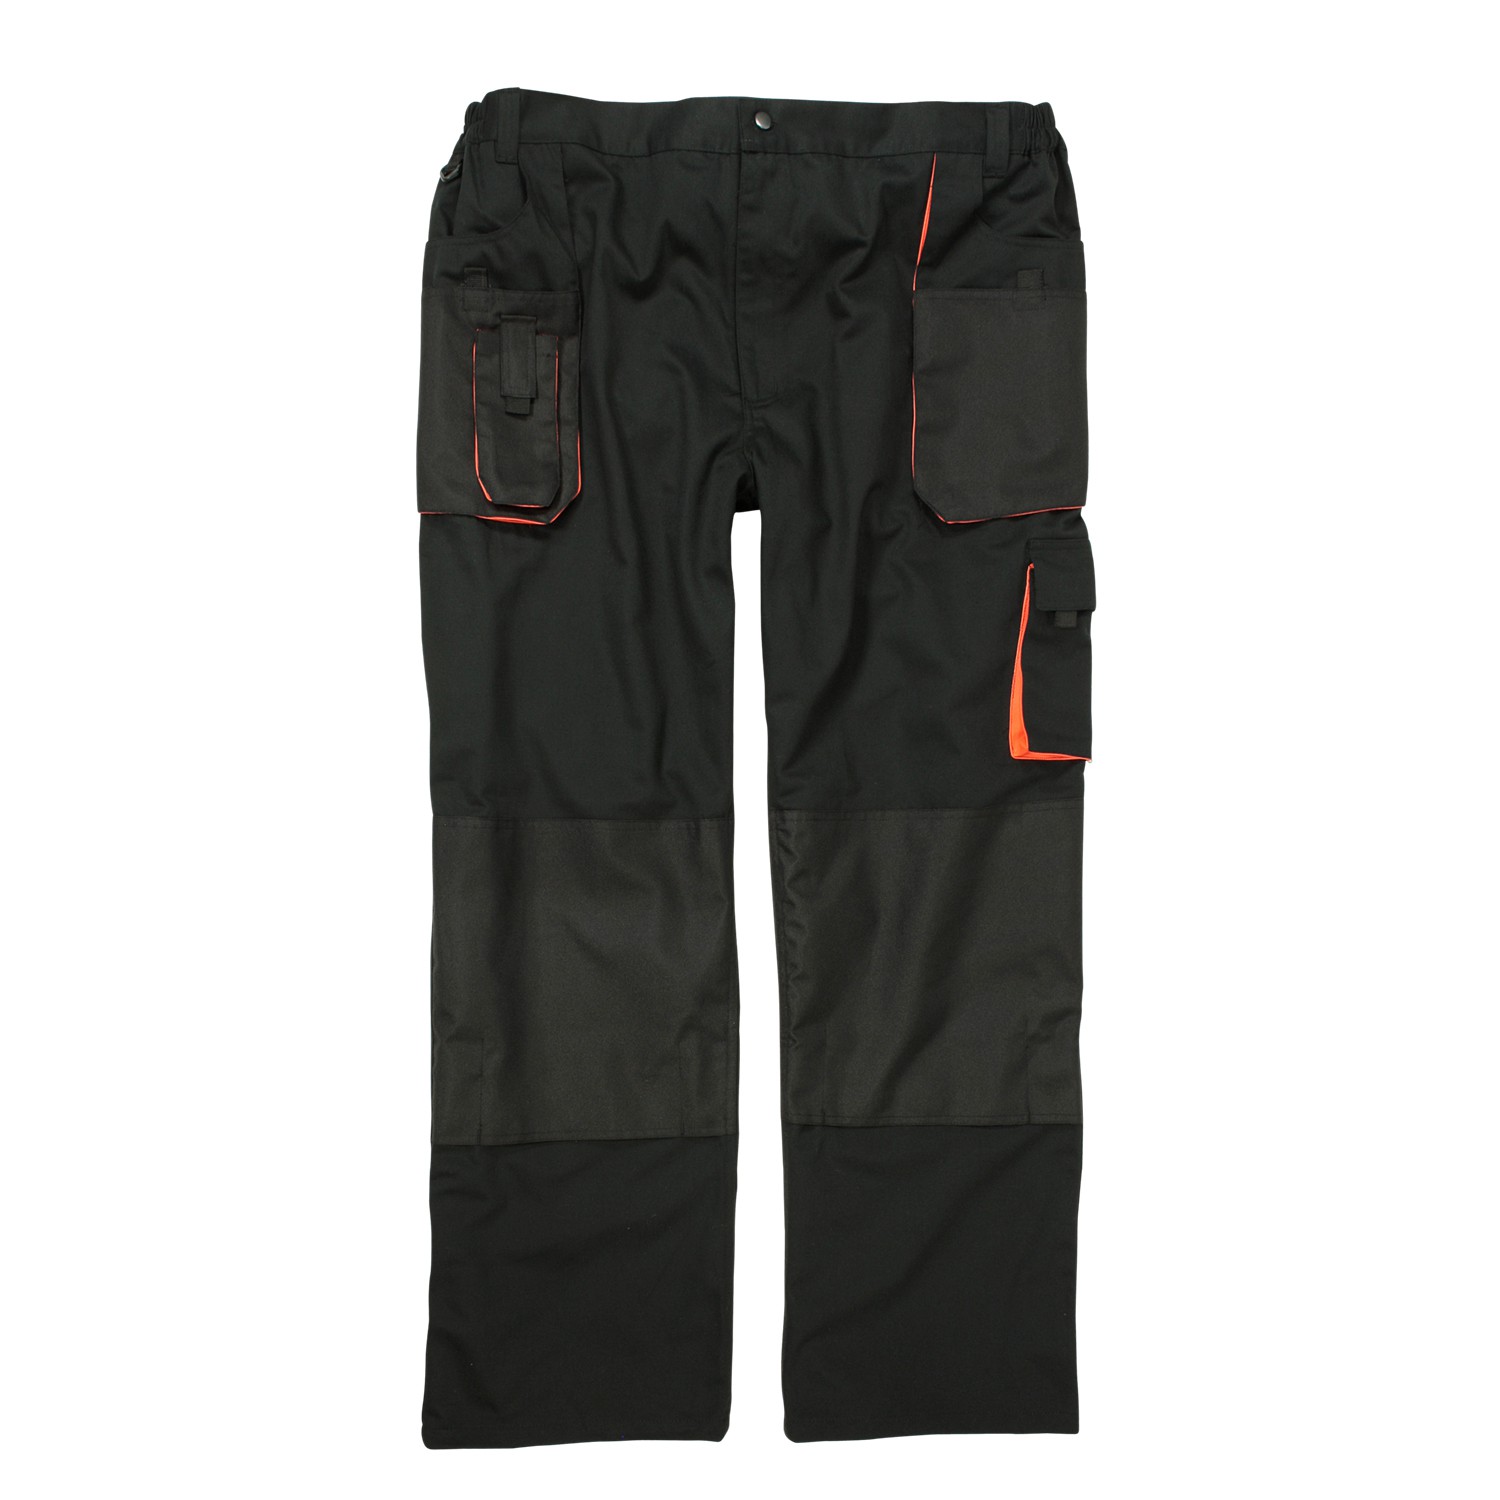 Pantalon de travail noir de marc&mark grandes tailles jusqu'au 10XL